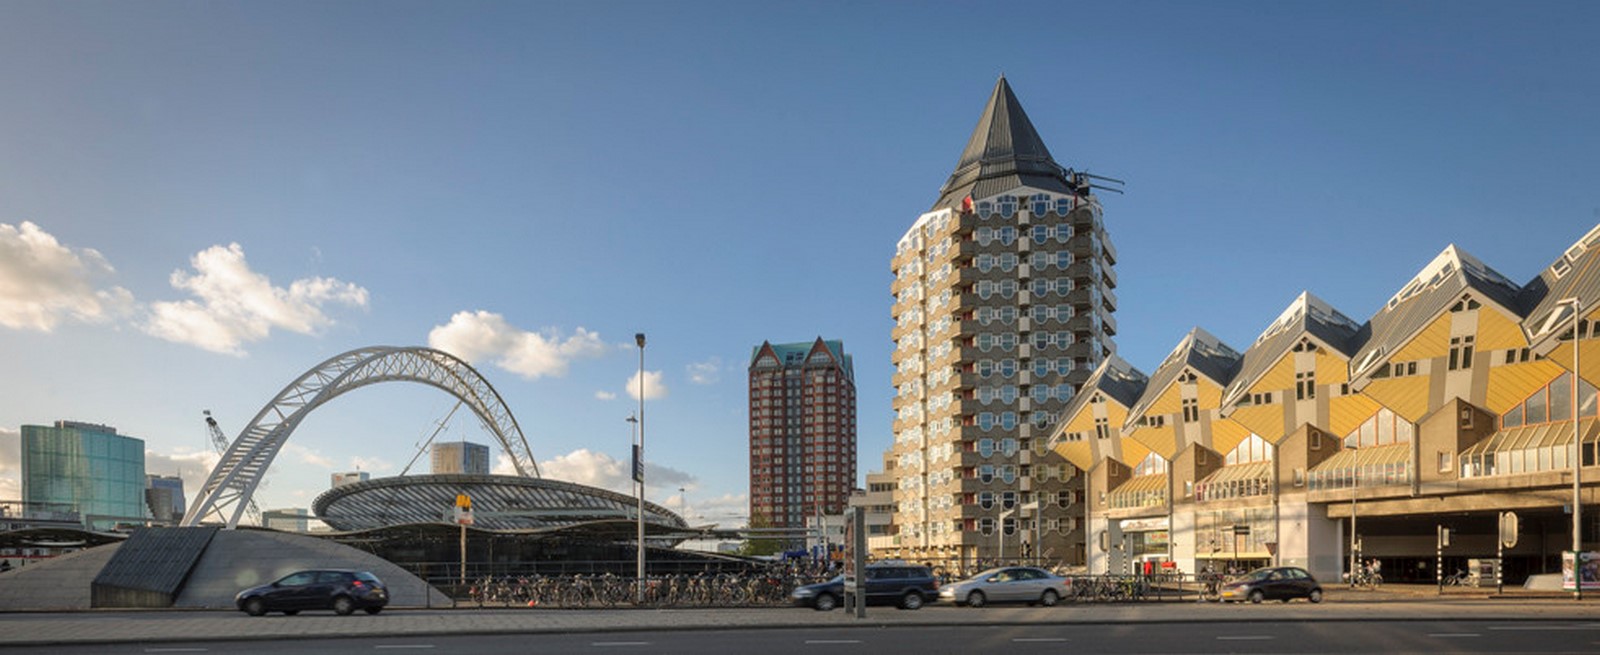 Kubuswoningen by Piet Blom: Living as an Urban Roof - Sheet3